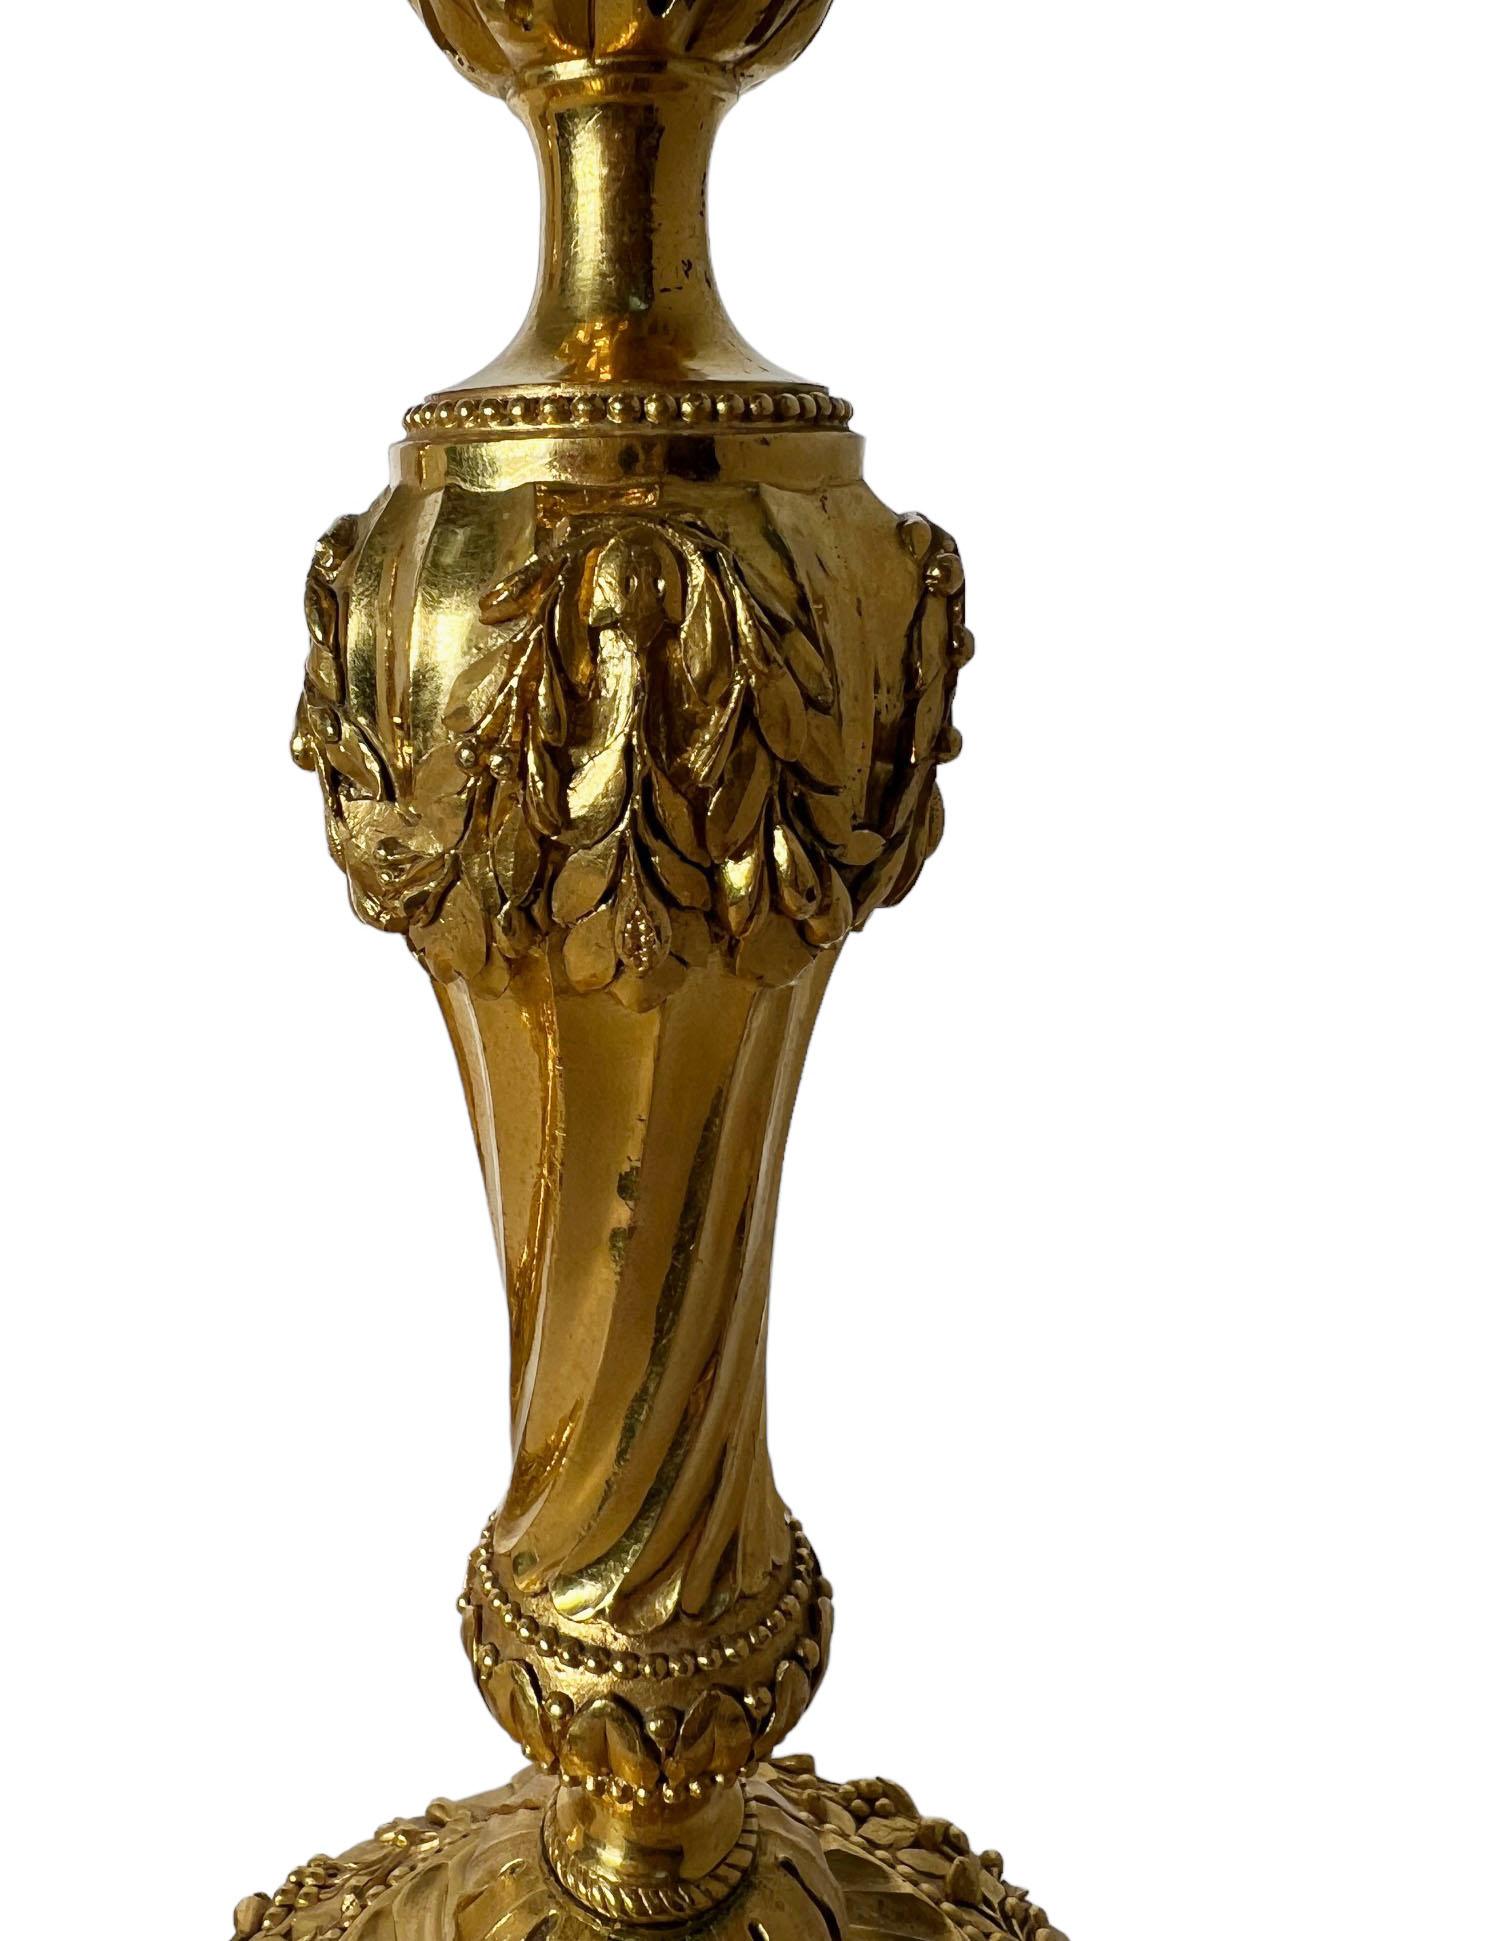 Feinste Qualität von Christofle aus Vergoldung und Bronze, die es gibt. Fein vergoldet mit Blättern und Blumen. Alle sind signiert. Frankreich, 1890-1900.
